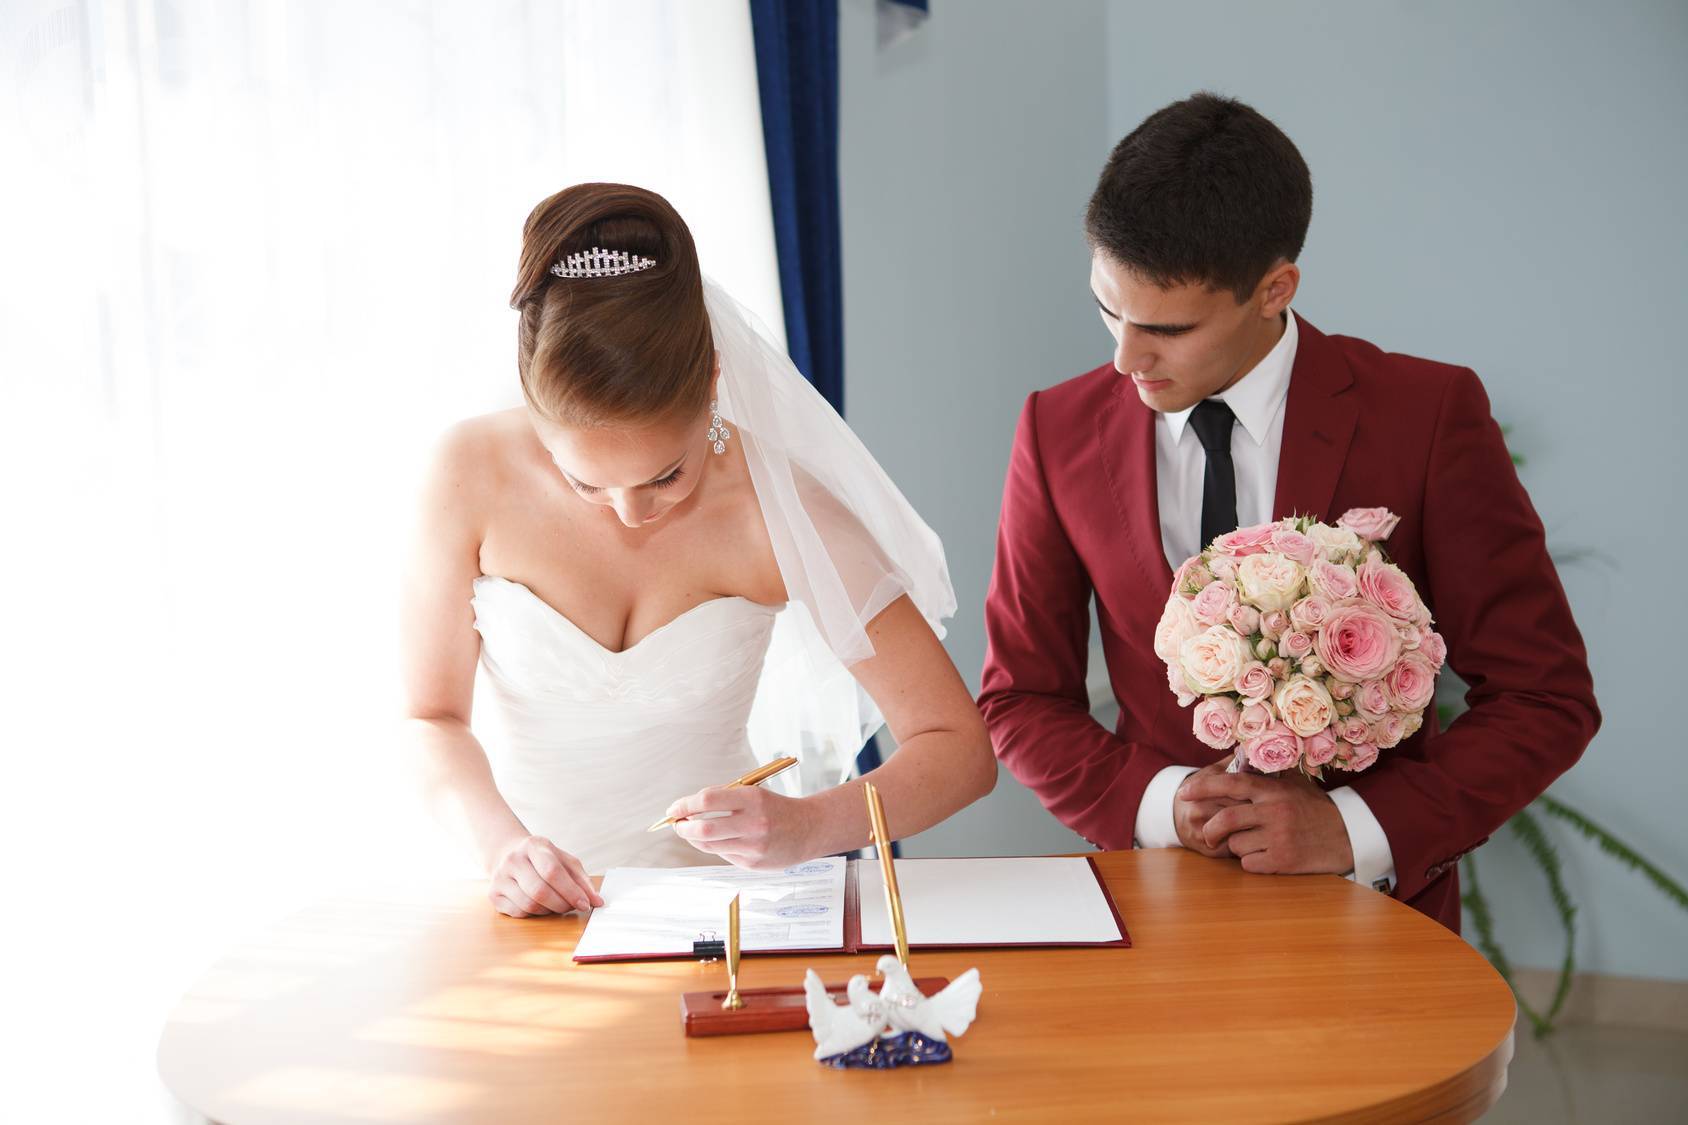 Всё, что вам надо знать о рассадке гостей на свадьбе | wedding blog